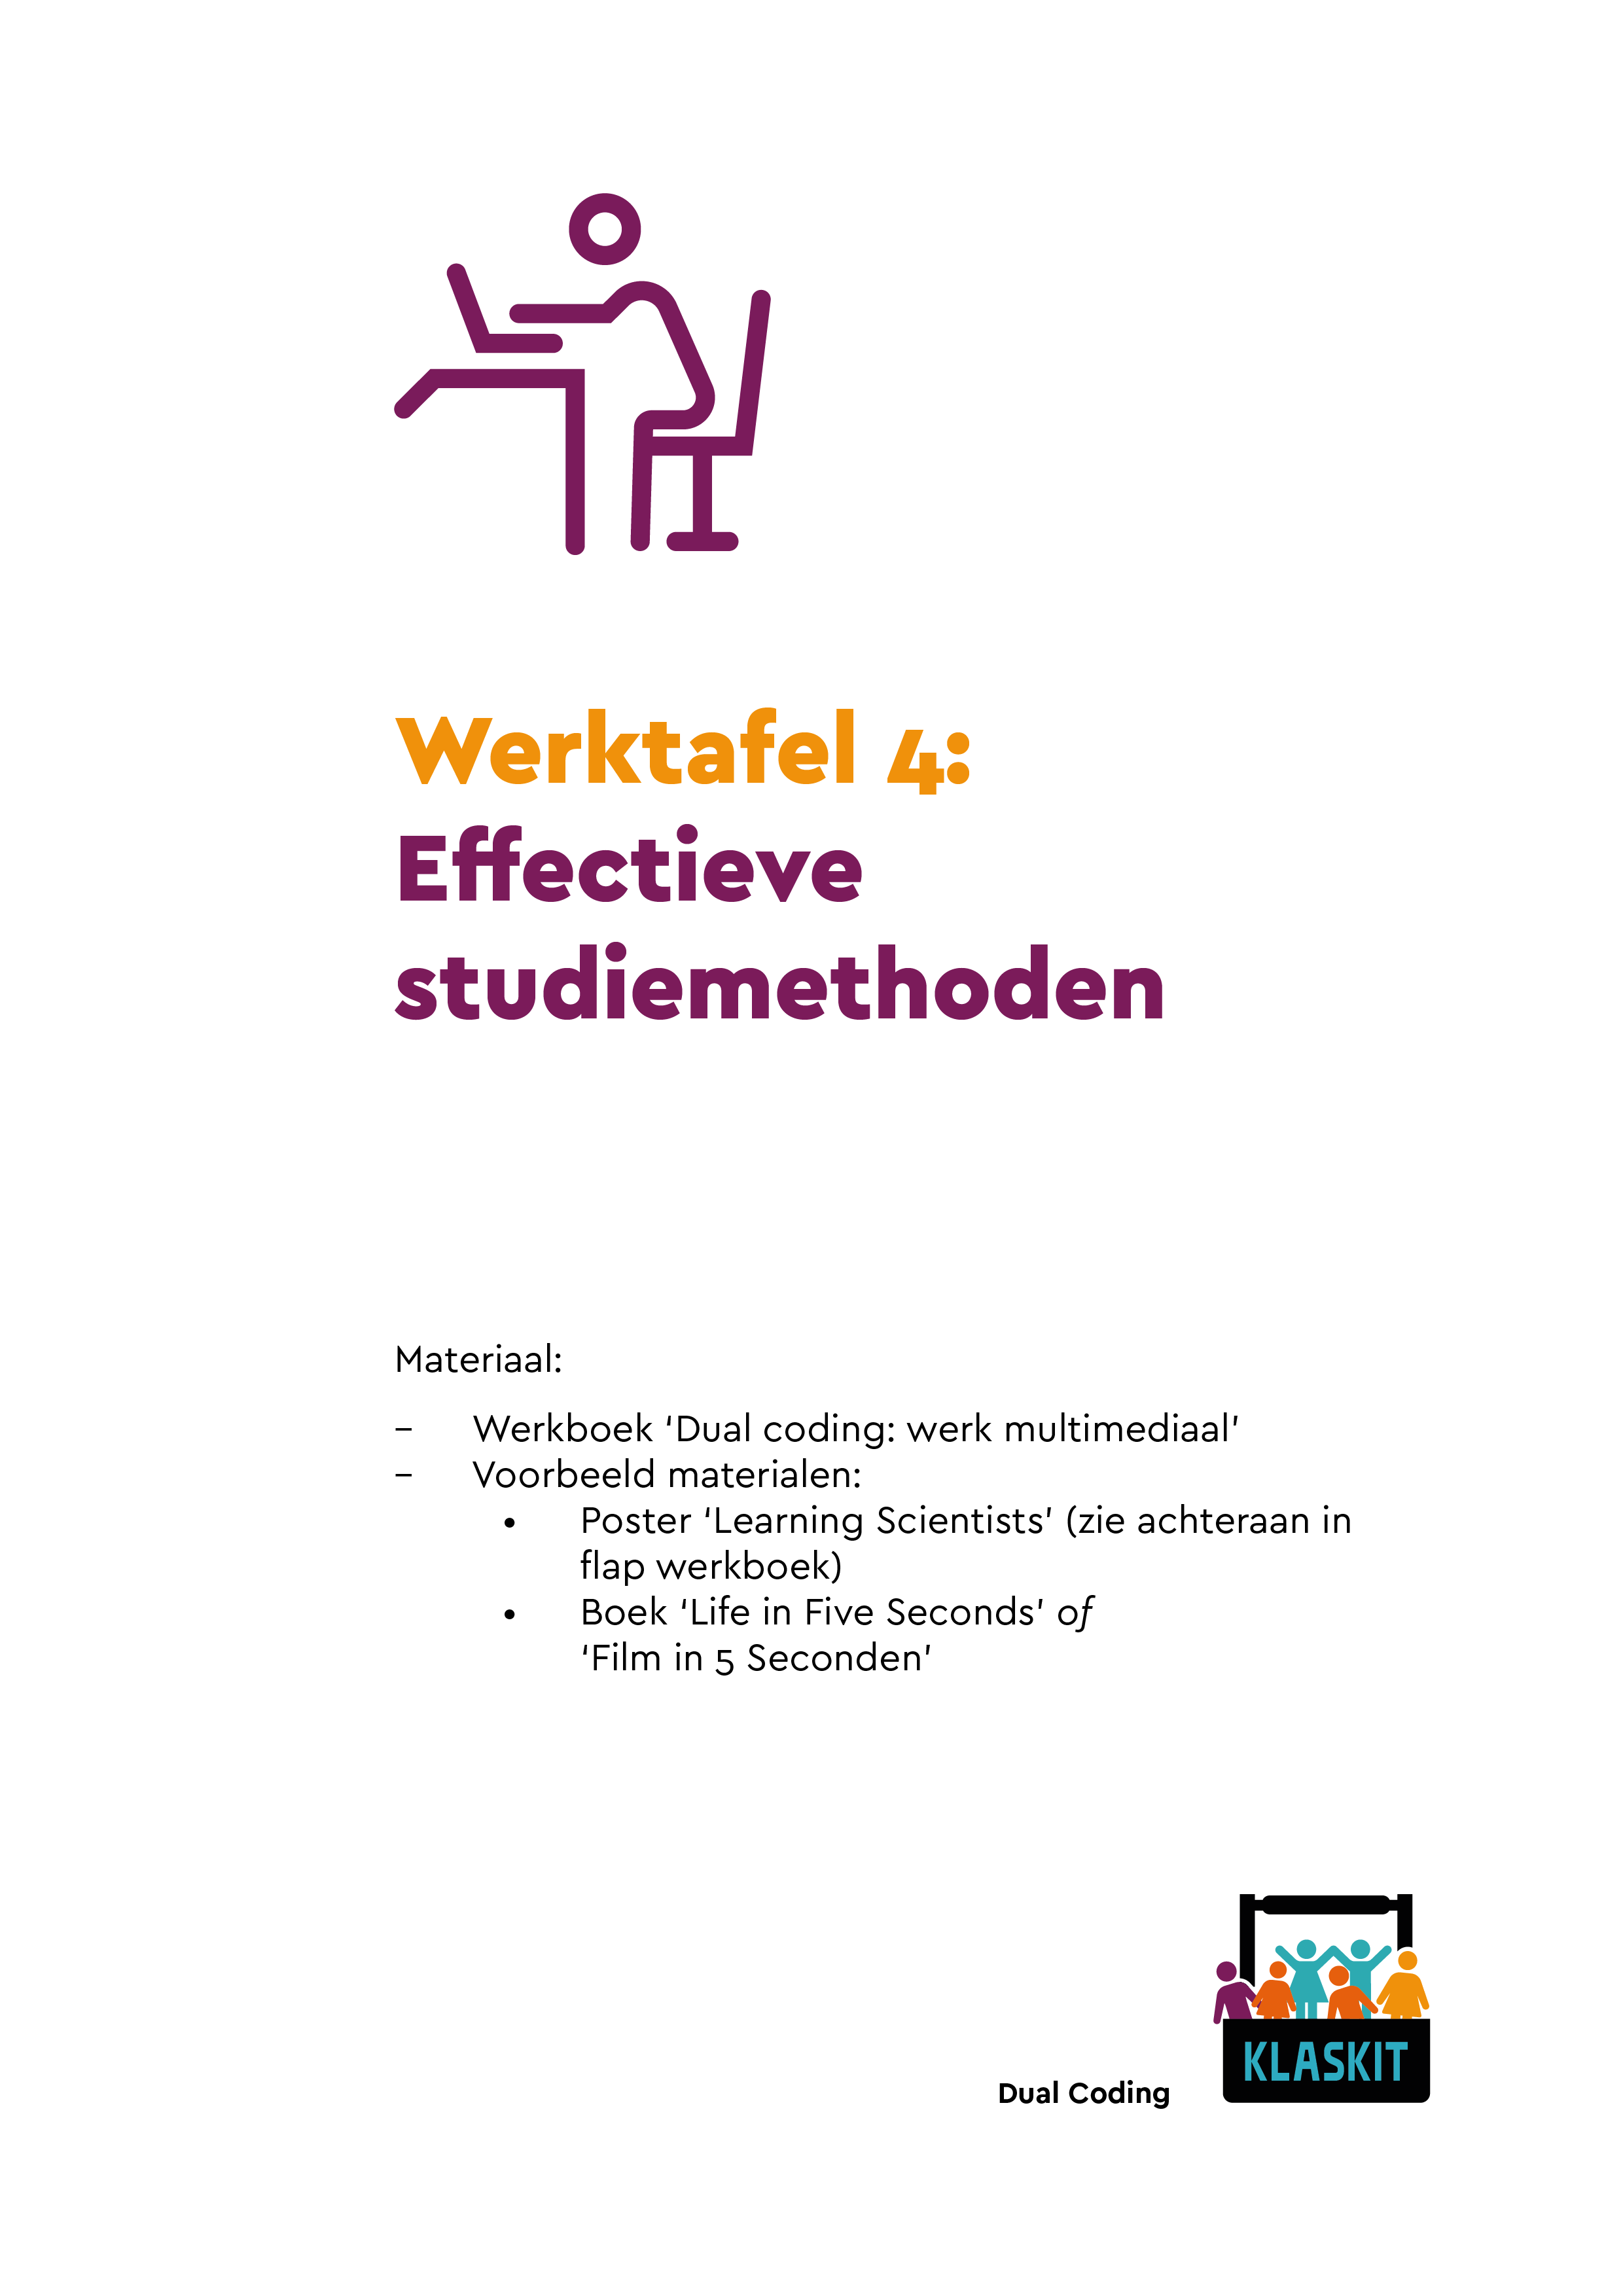 Werktafel 4: Effectieve studiemethoden